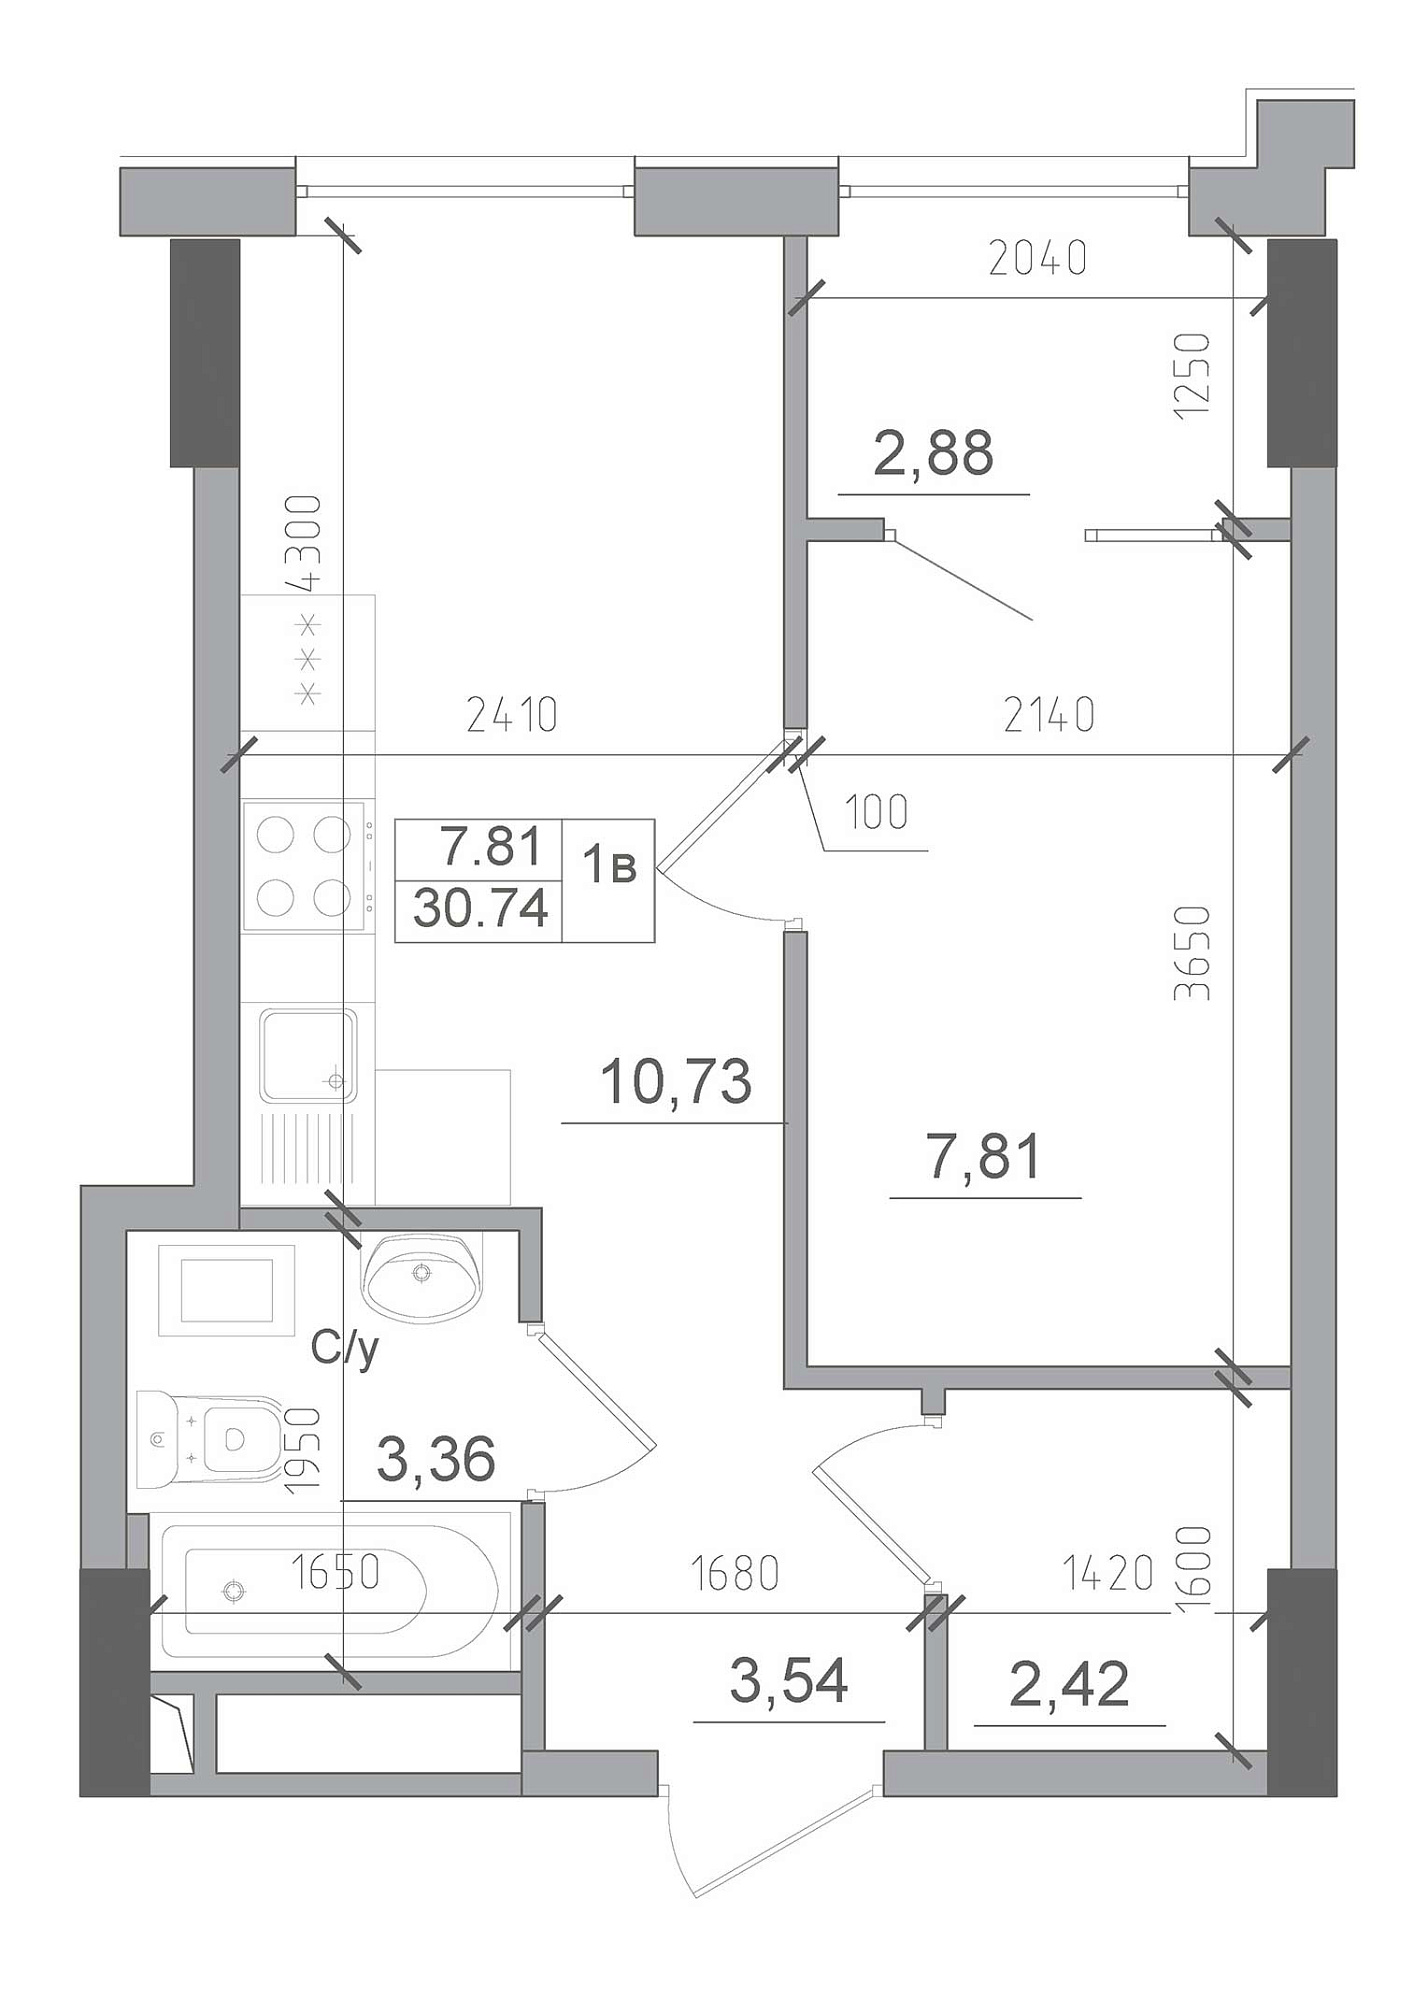 Планування 1-к квартира площею 30.74м2, AB-22-05/00003.